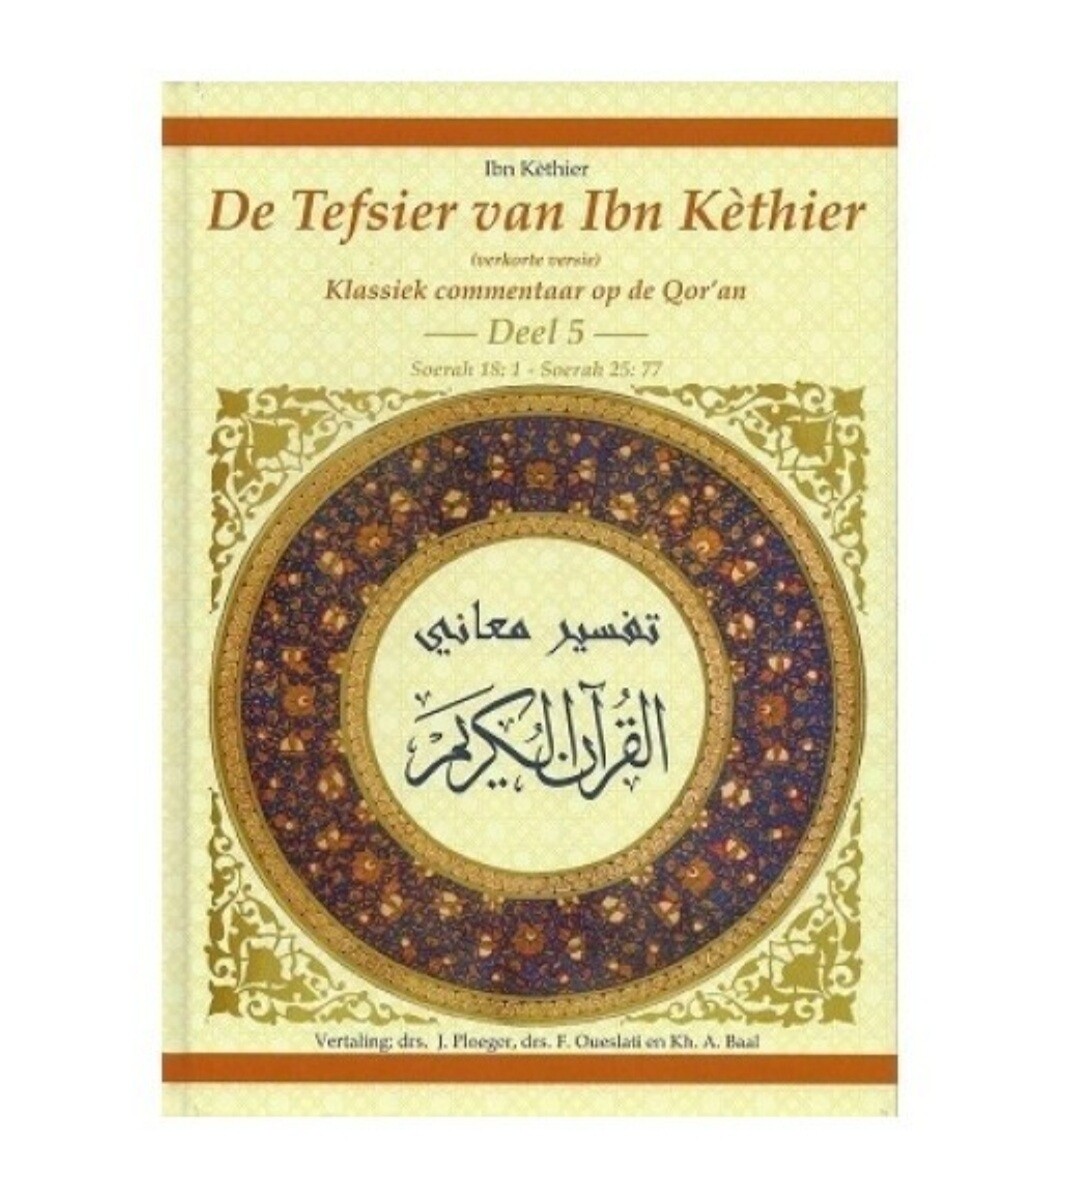 De tafsier van Ibn Kathier deel 5